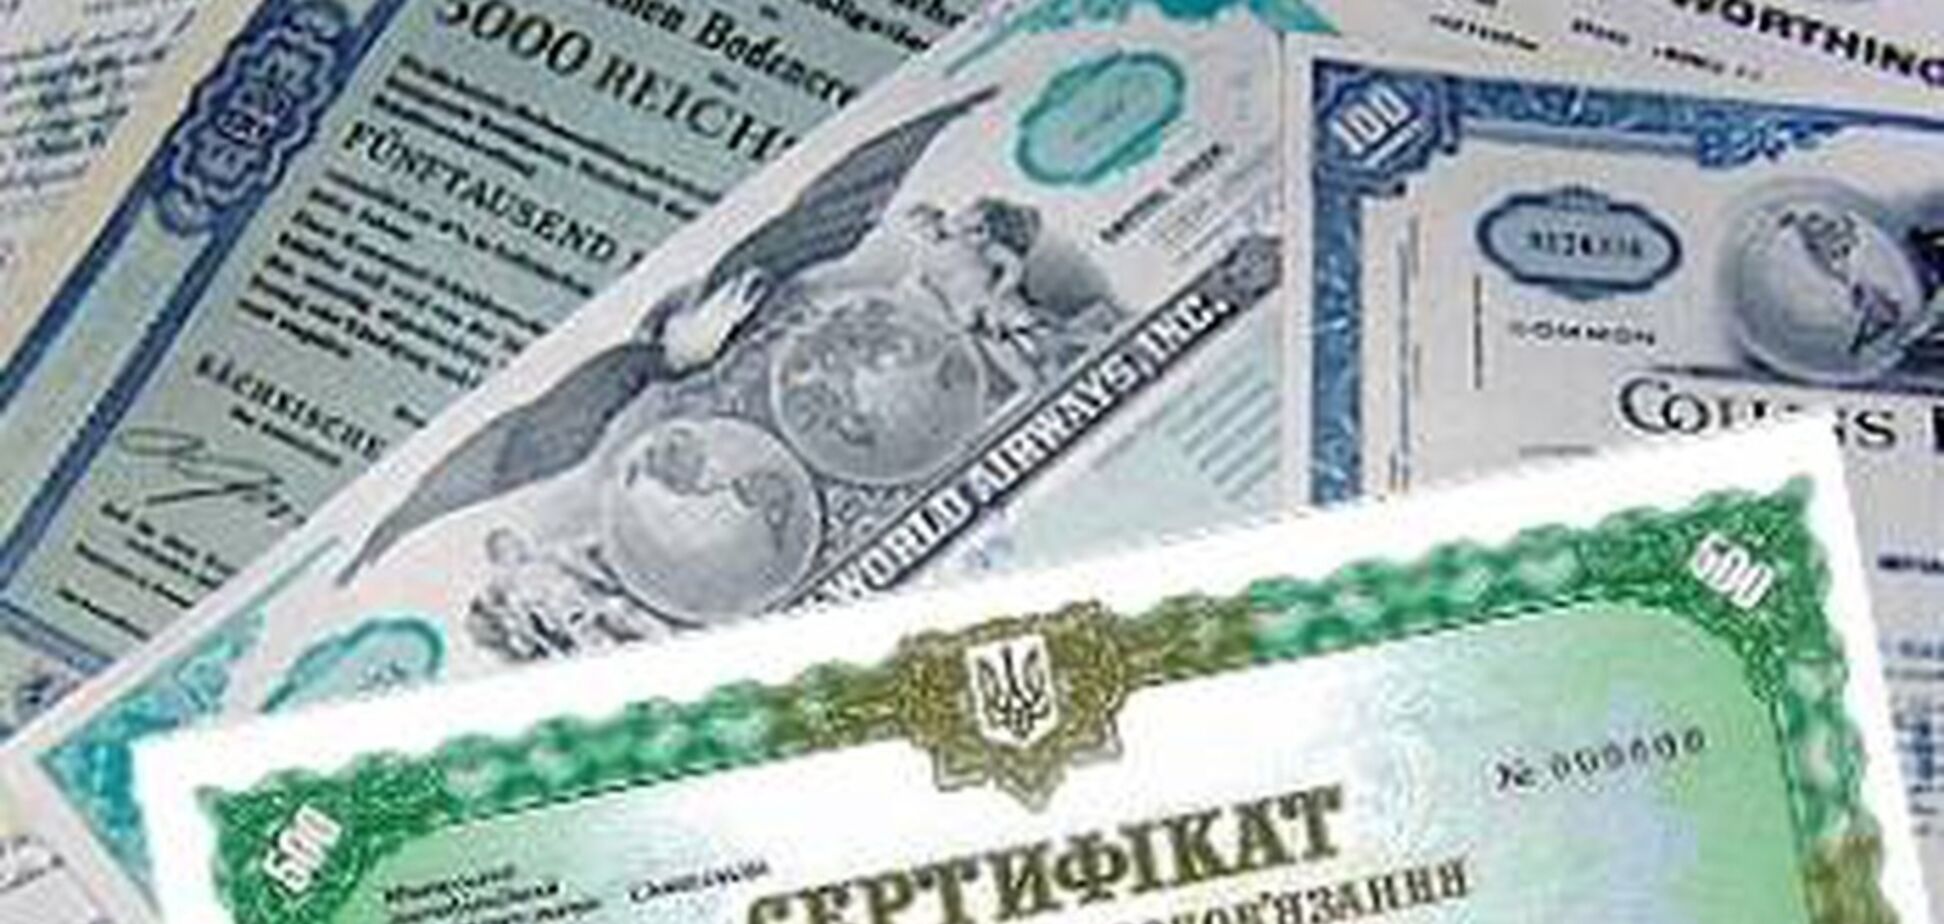 Компаниец пояснил ценность украинских облигаций для иностранных инвесторов